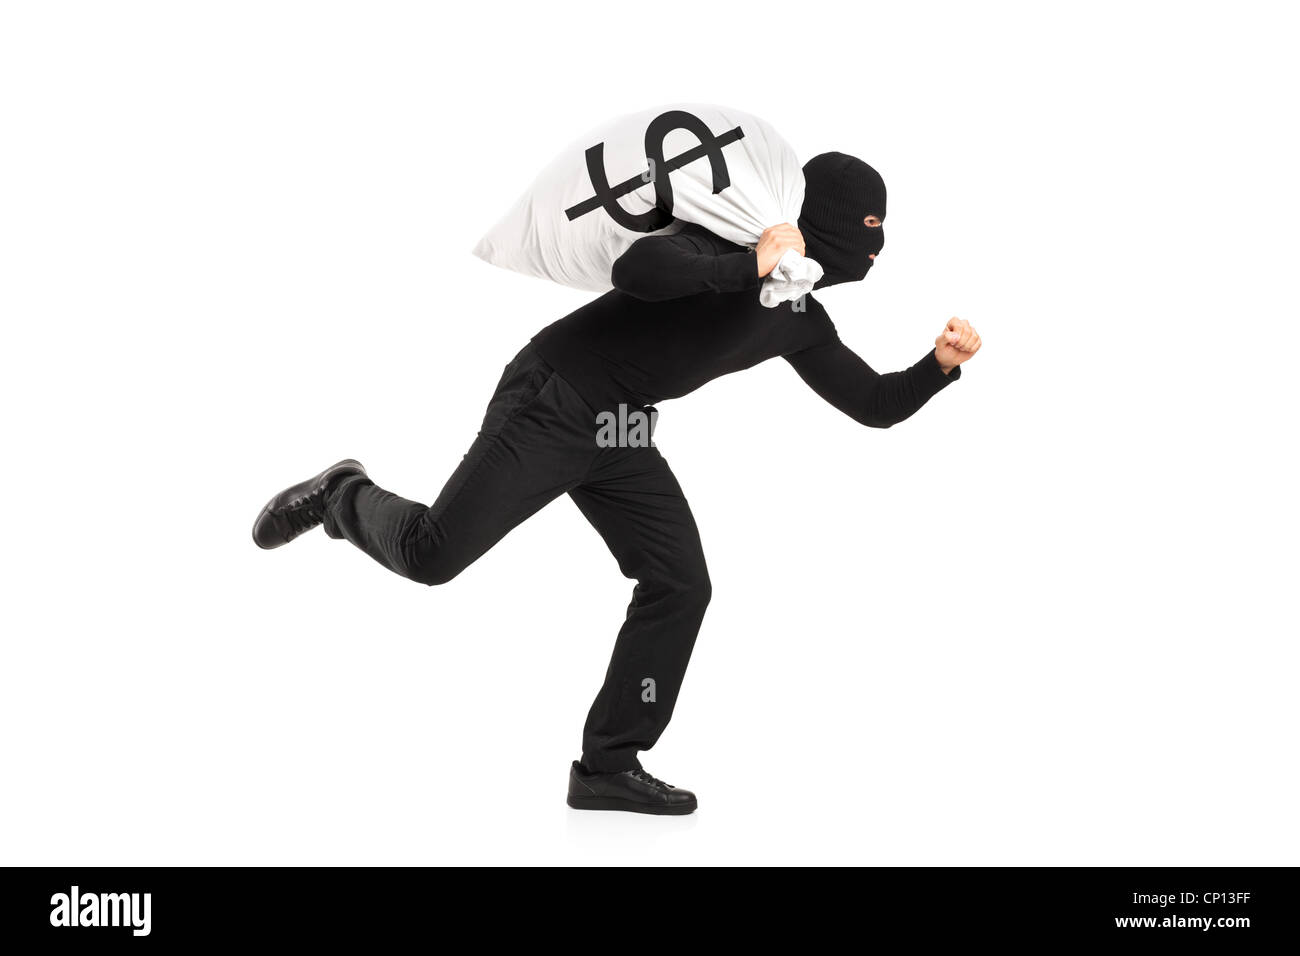 Un ladro che porta un sacco e scappare isolata contro uno sfondo bianco Foto Stock